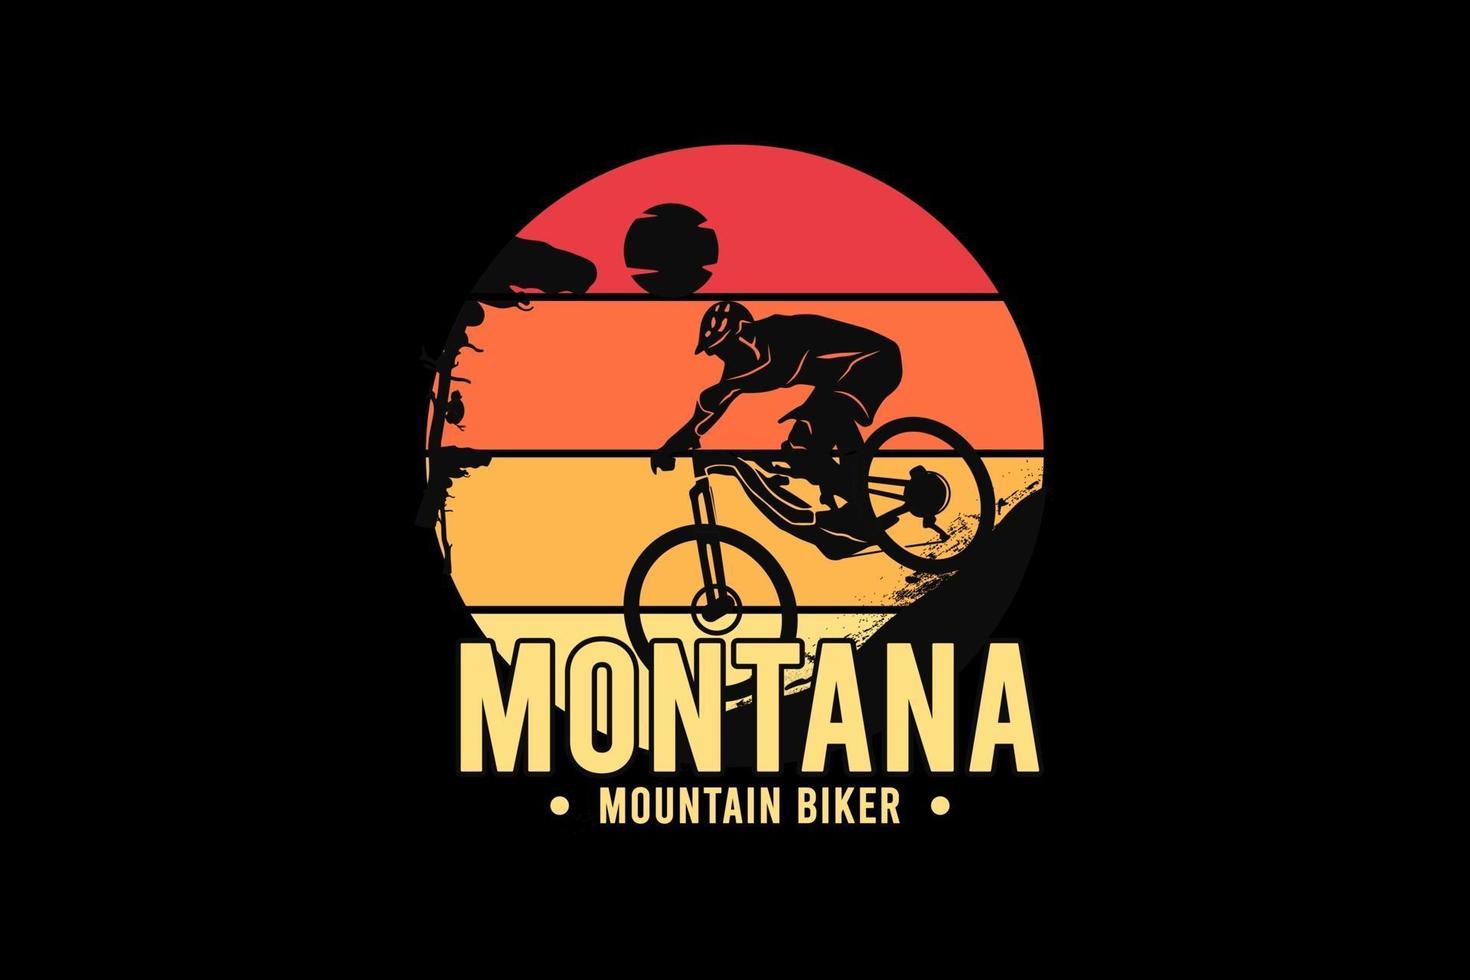 Ciclista de montaña montana, ilustración de dibujo a mano de estilo retro vintage vector